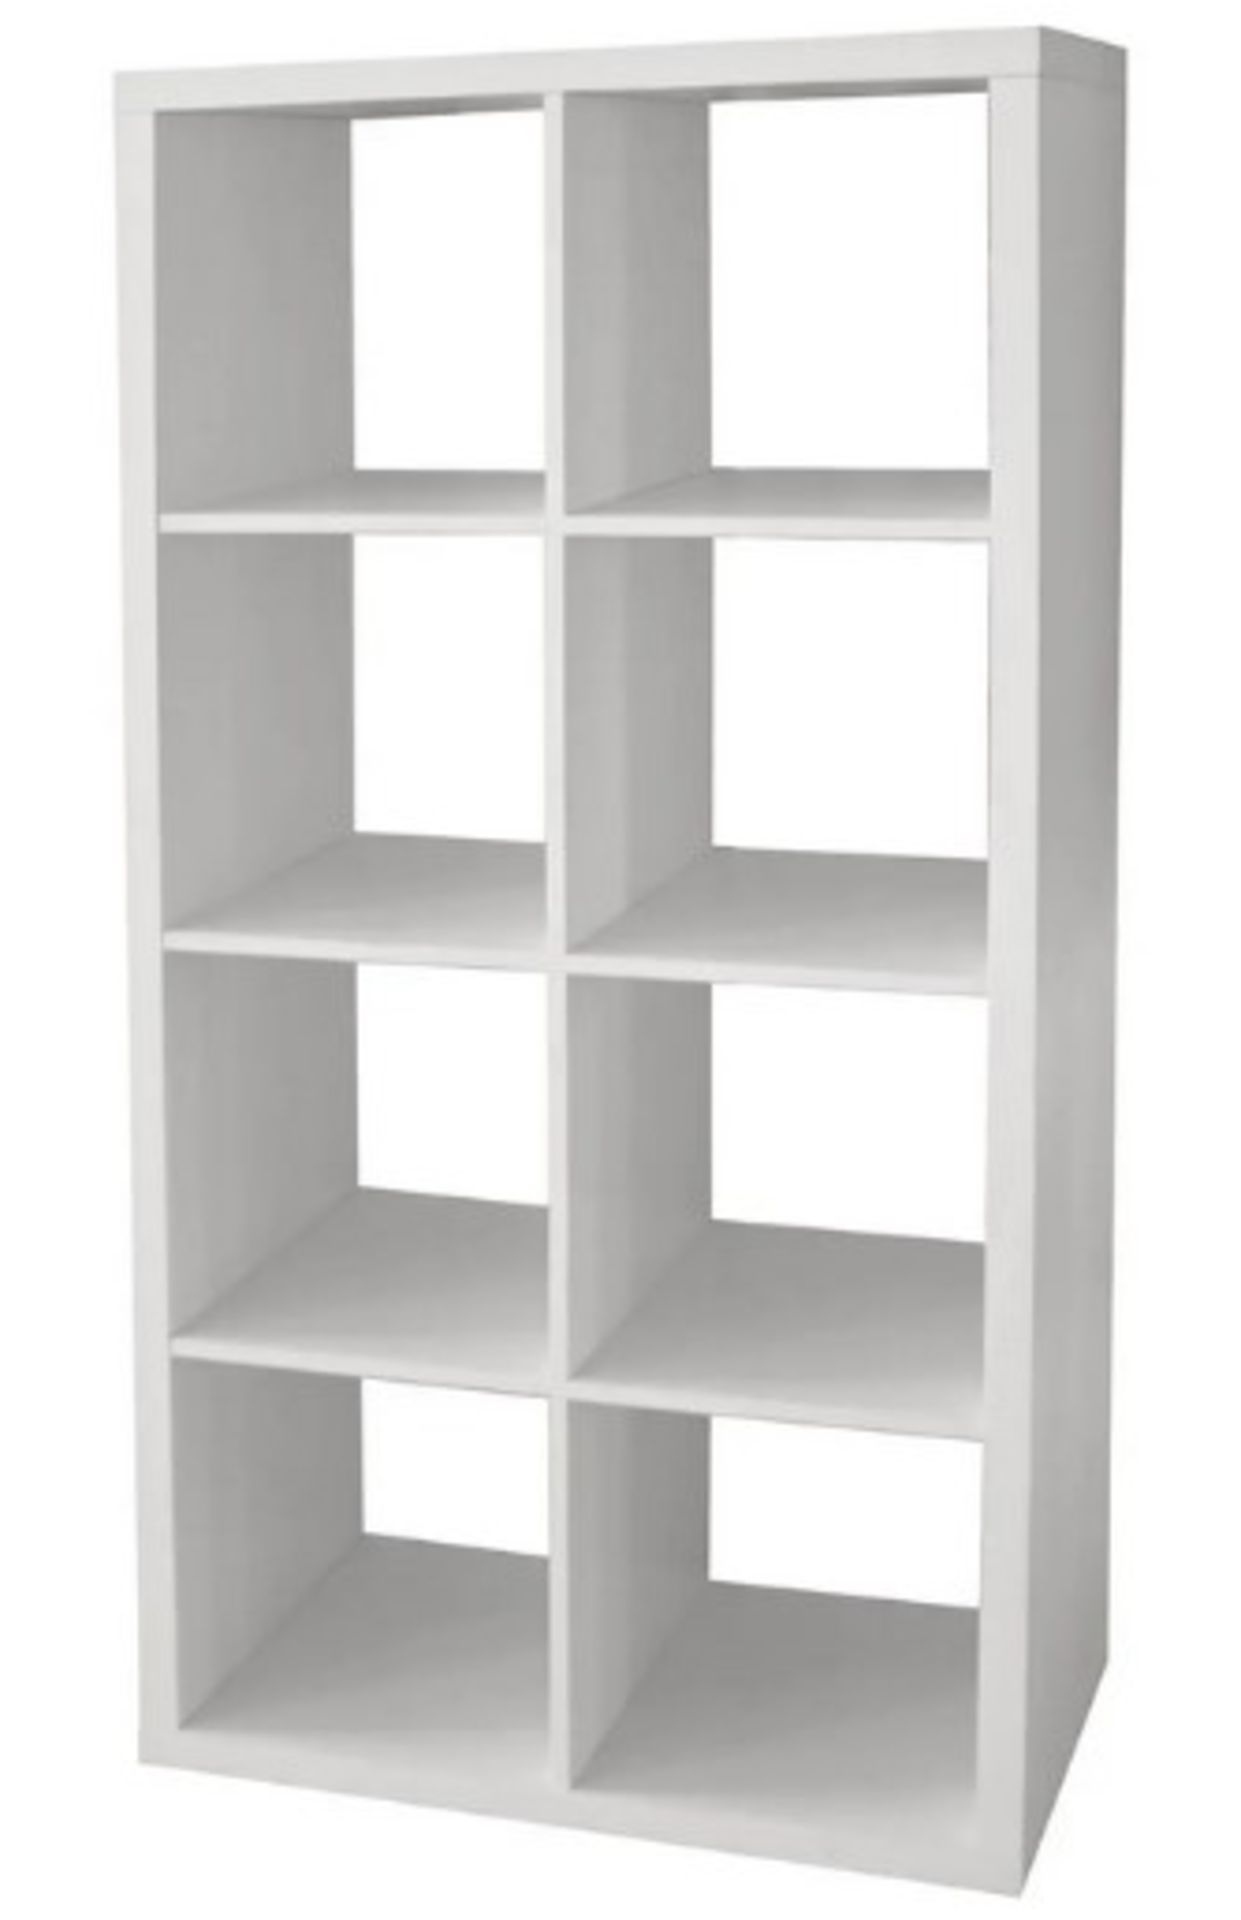 (96/Mez) Living Elements Clever Cube 2x4 Cube Storage Unit White Matt Finish. 8 Separate Compartm...